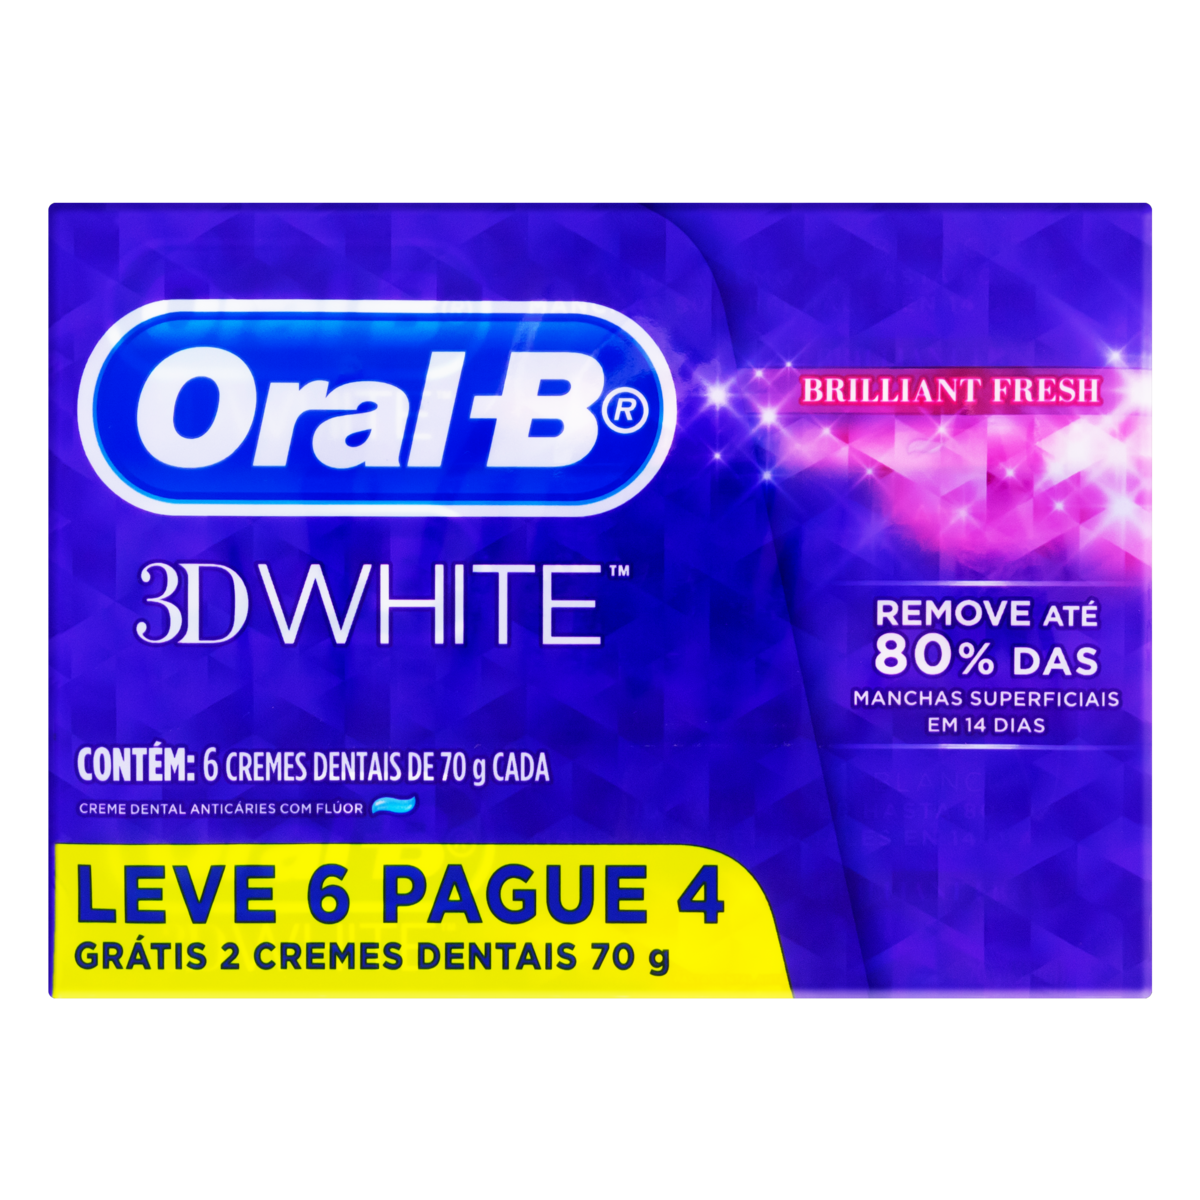 7500435134163 - PACK CREME DENTAL ORAL-B 3D WHITE BRILLIANT FRESH CAIXA 70G CADA LEVE 6 PAGUE 4 UNIDADES